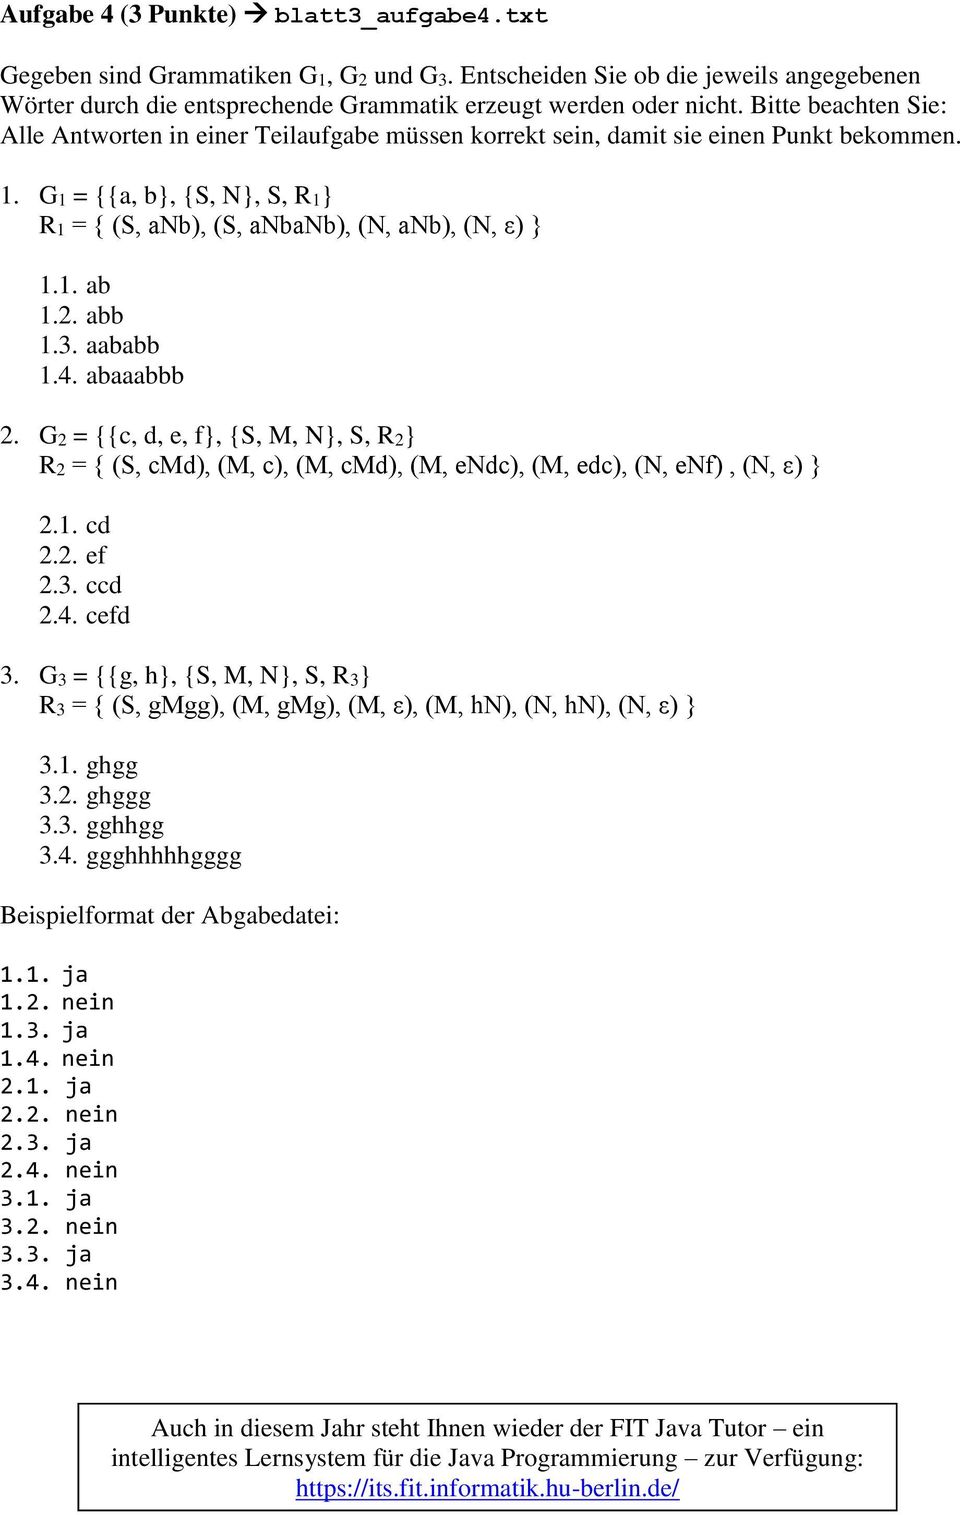 abb 1.3. aababb 1.4. abaaabbb 2. G2 = {{c, d, e, f, {S, M, N, S, R2 R2 = { (S, cmd), (M, c), (M, cmd), (M, endc), (M, edc), (N, enf), (N, ε) 2.1. cd 2.2. ef 2.3. ccd 2.4. cefd 3.